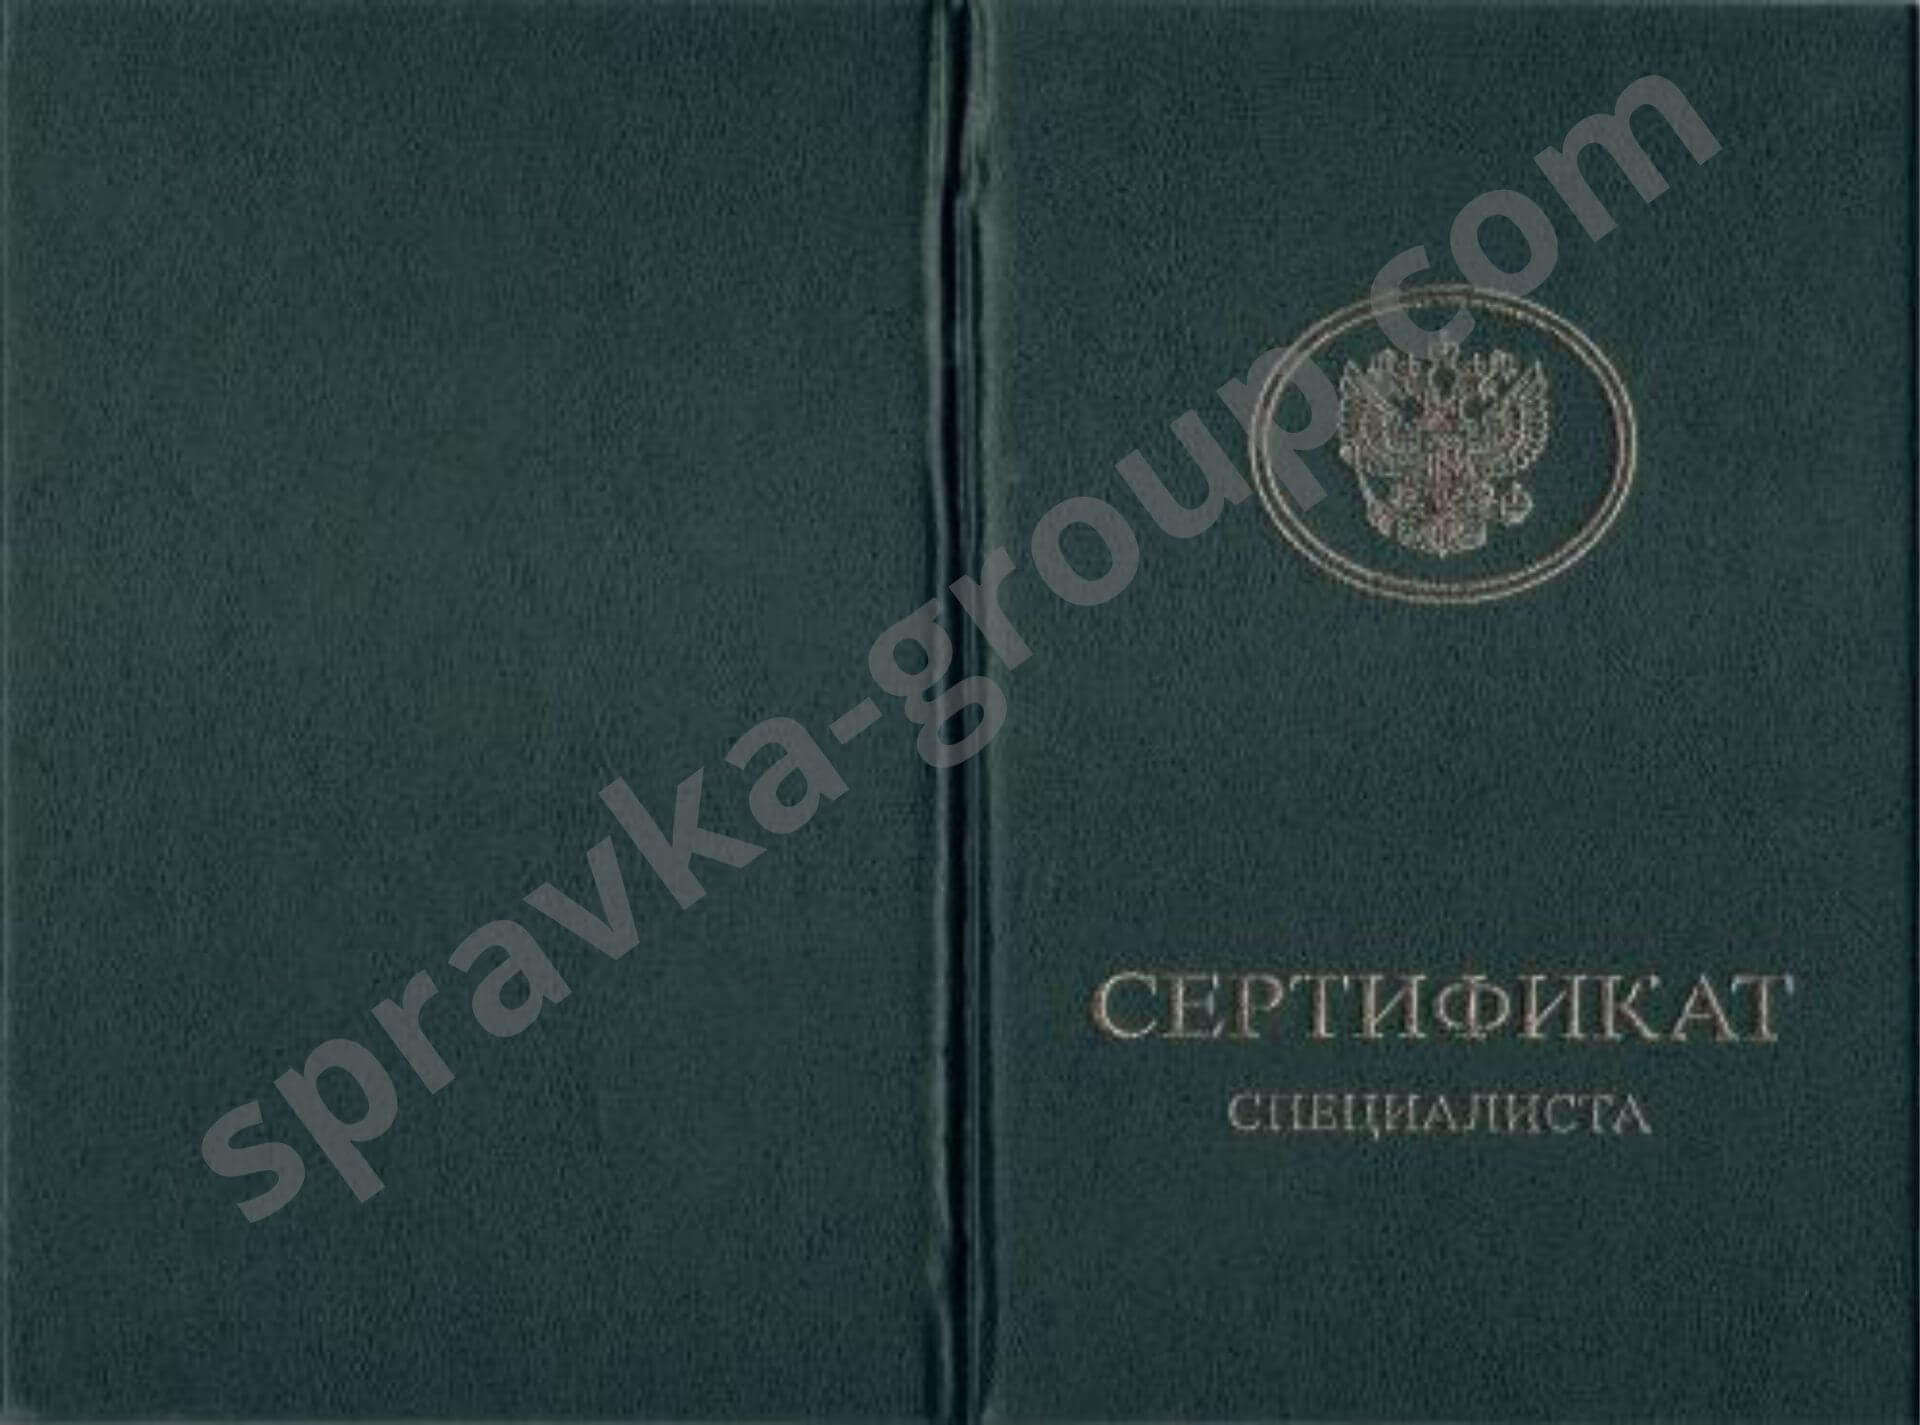 Купить сертификат медсестры в Москве, фото №3